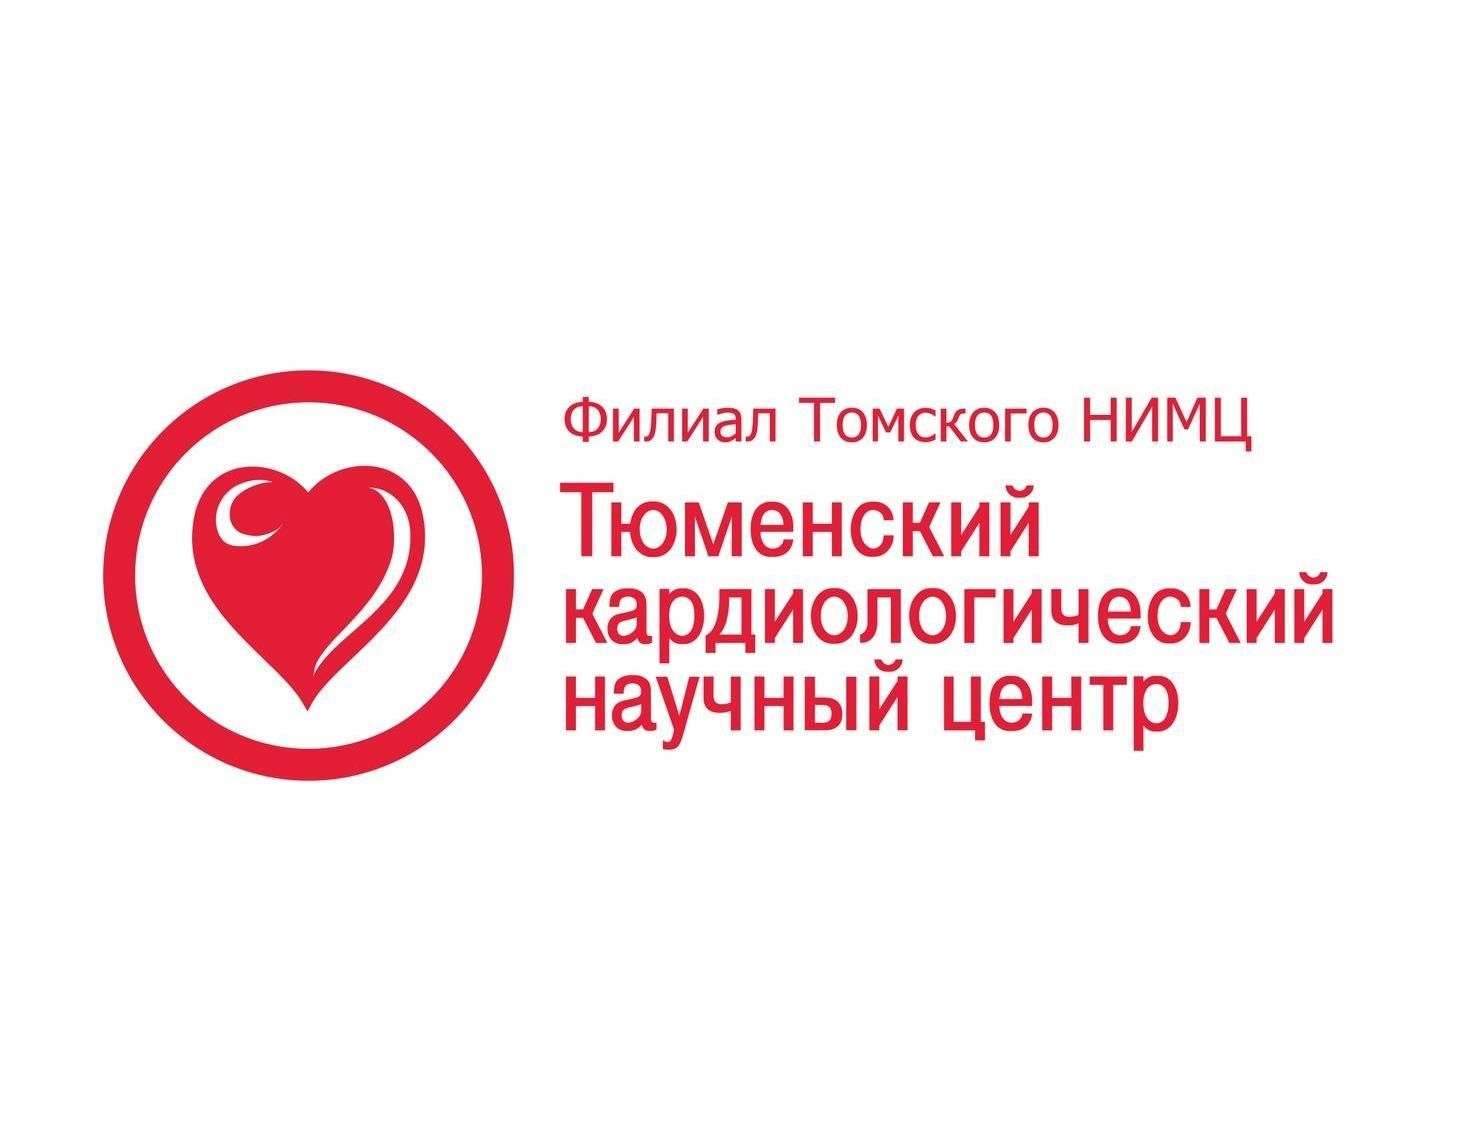 26 Европейский конгресс по гипертонии и профилактике сердечно-сосудистых заболеваний